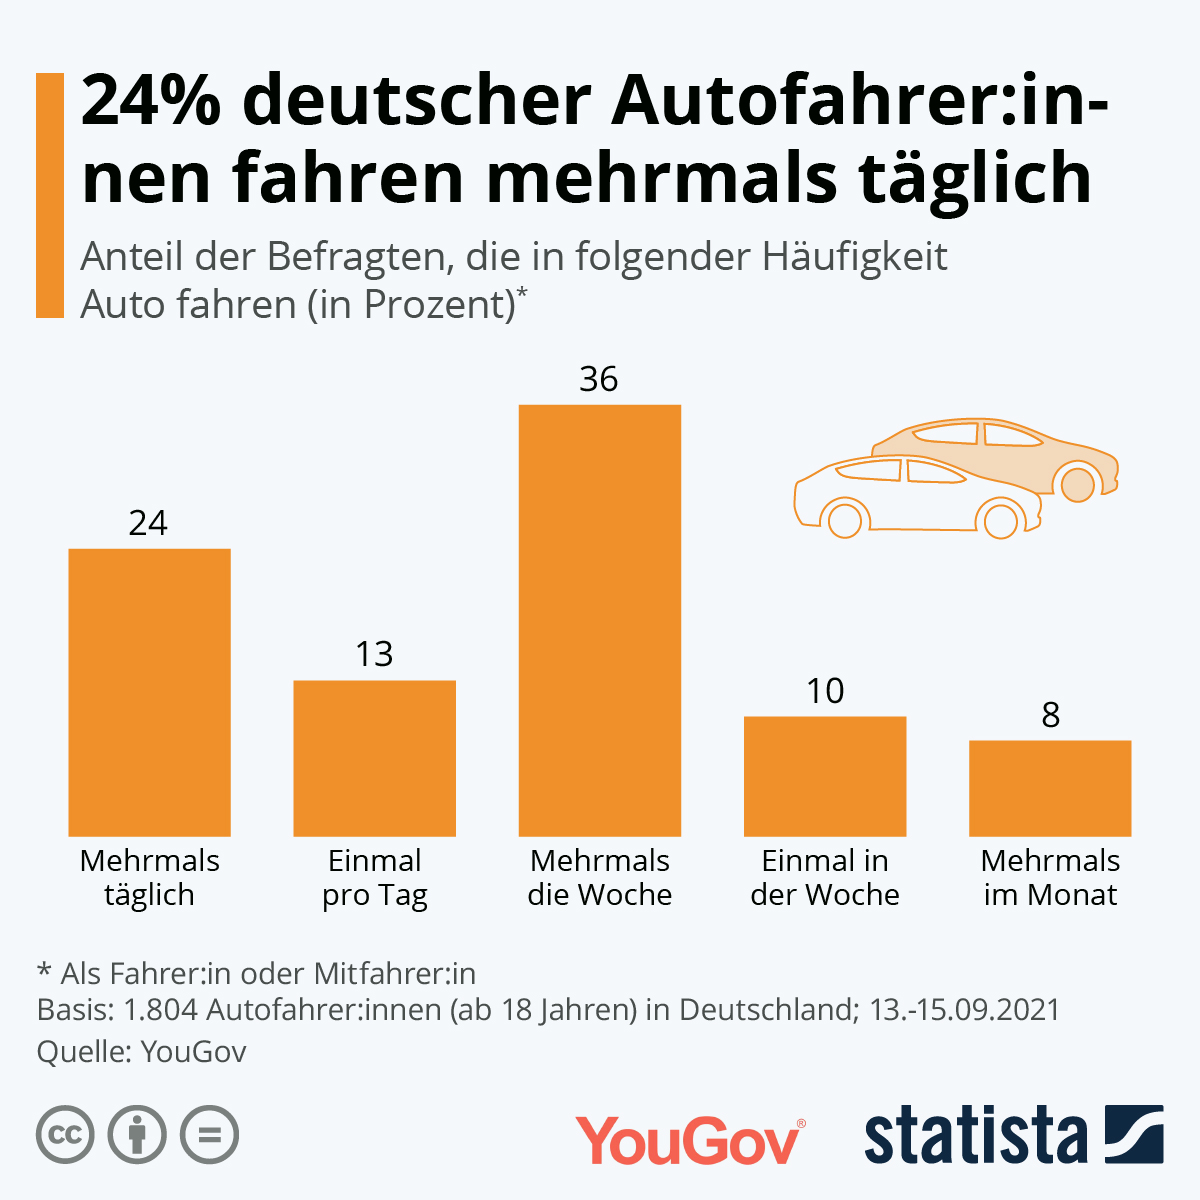 Wie häufig fährt man in Deutschland Auto?